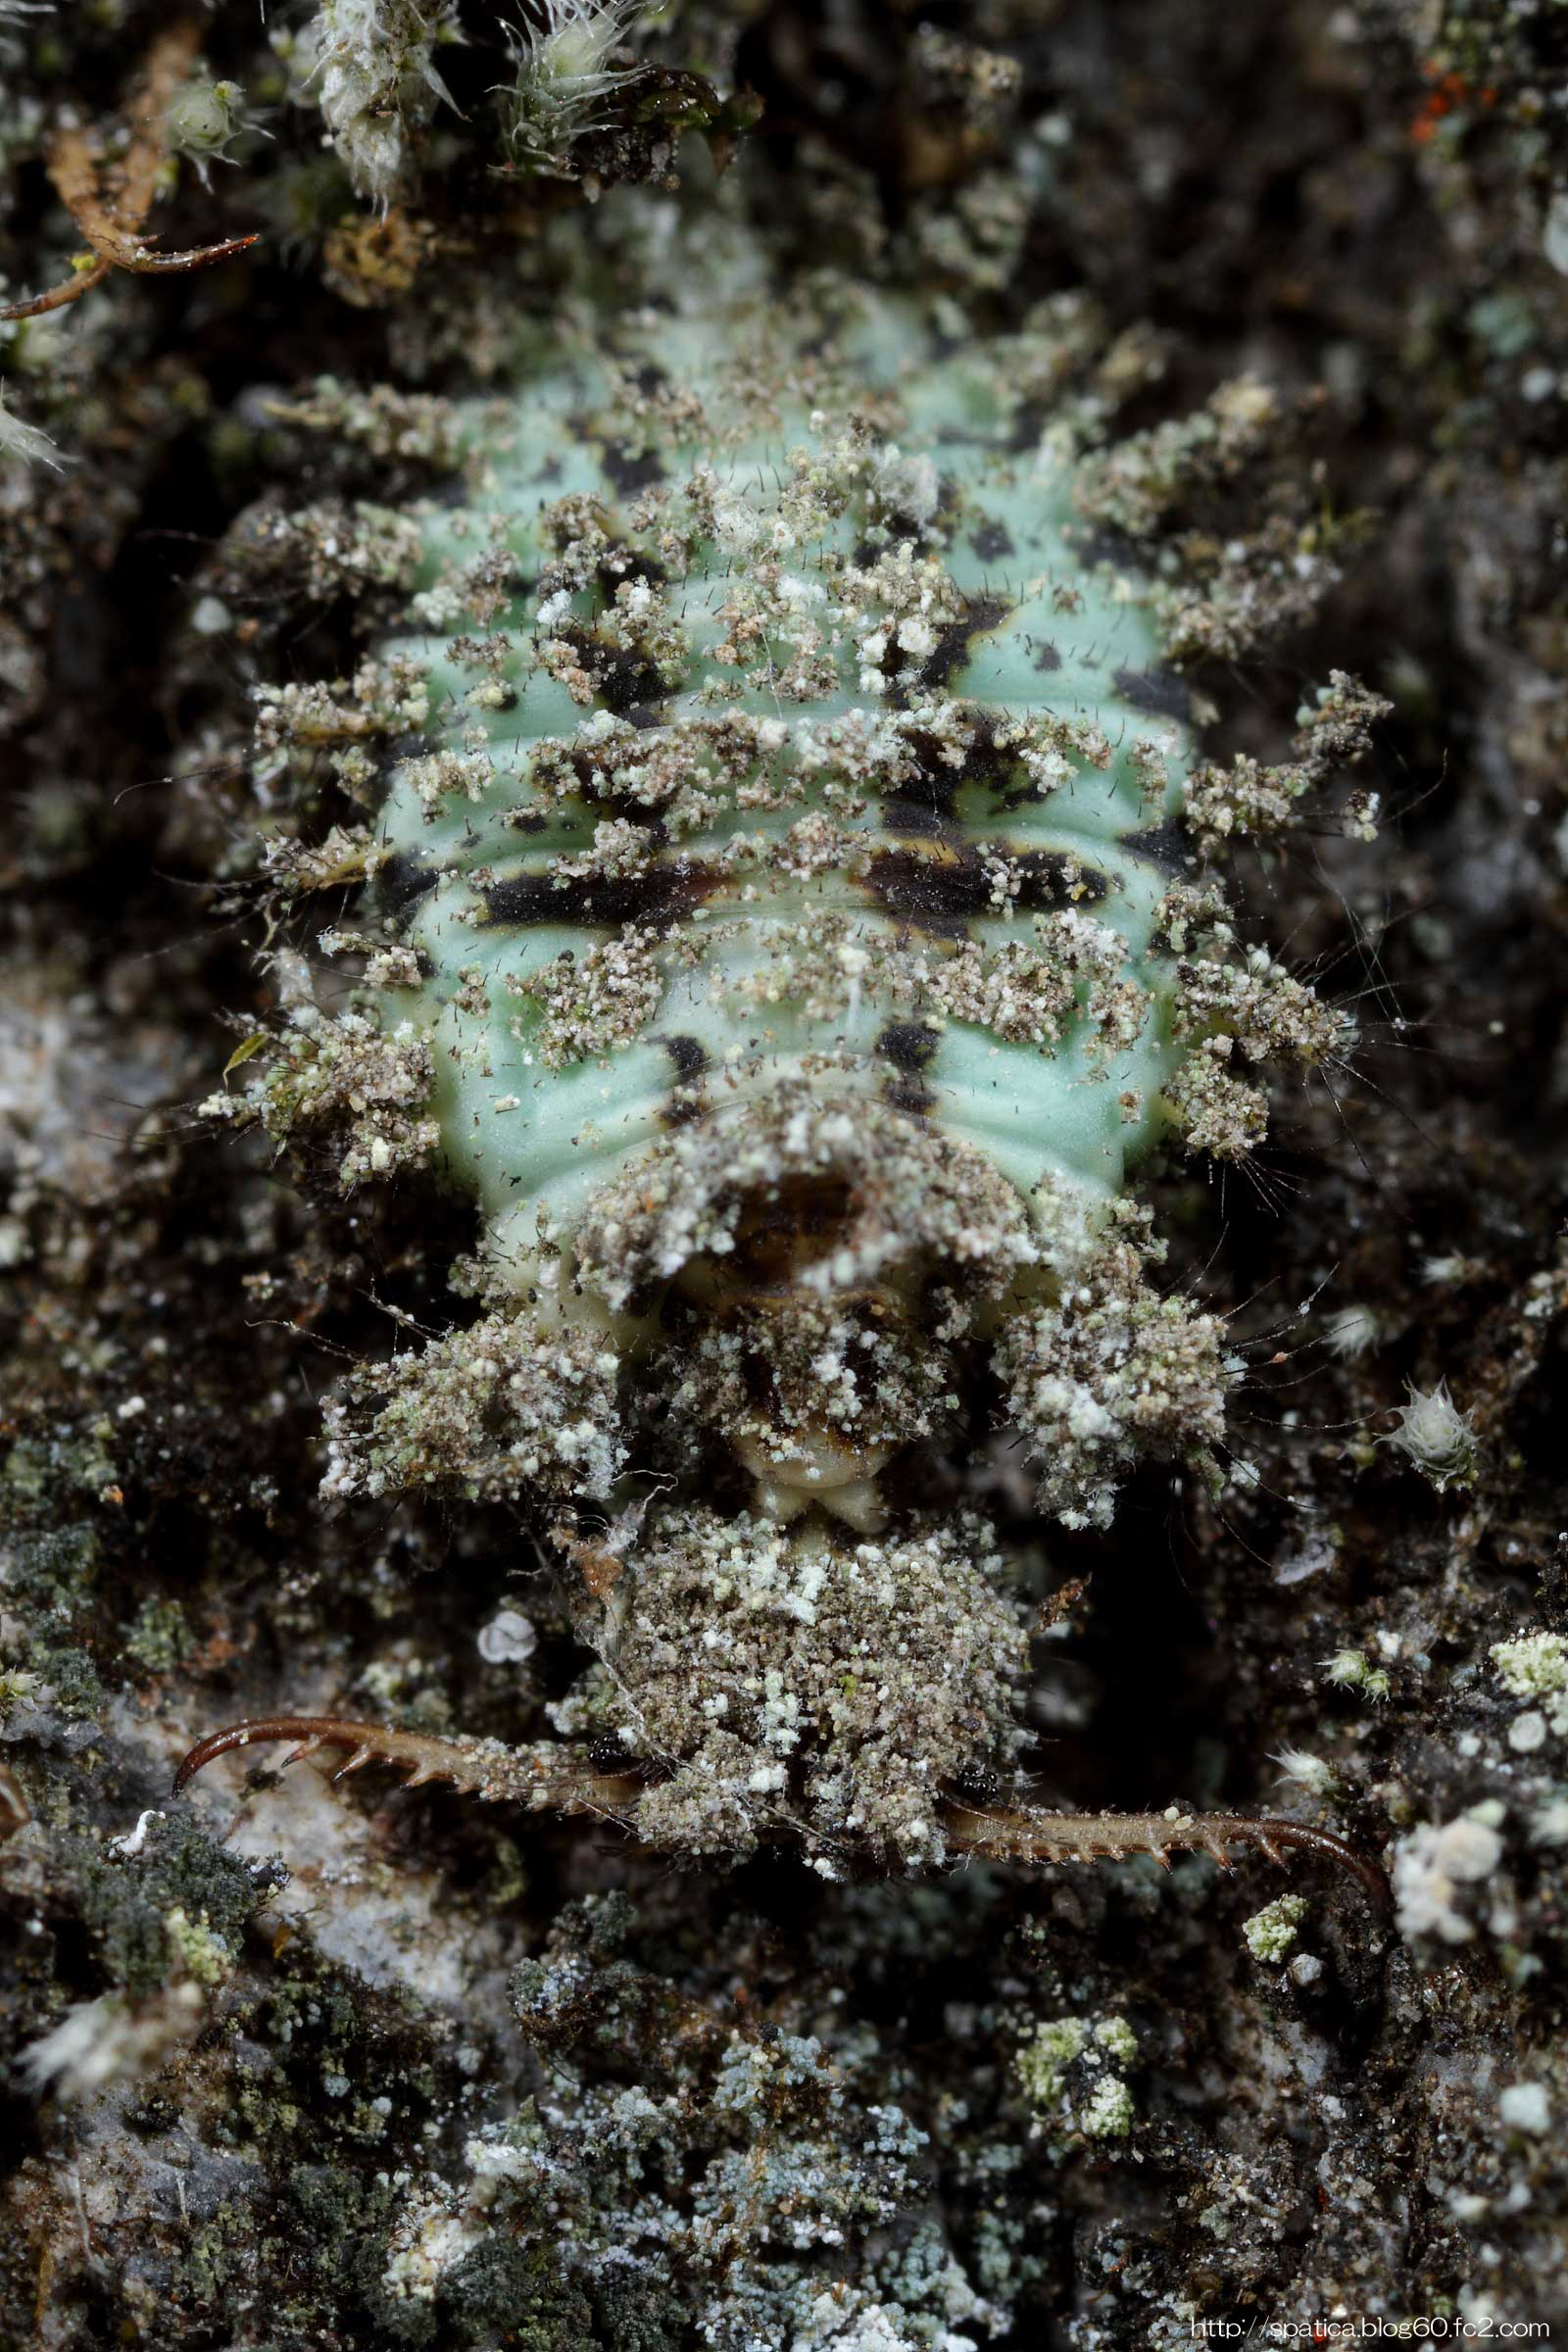 コマダラウスバカゲロウ幼虫